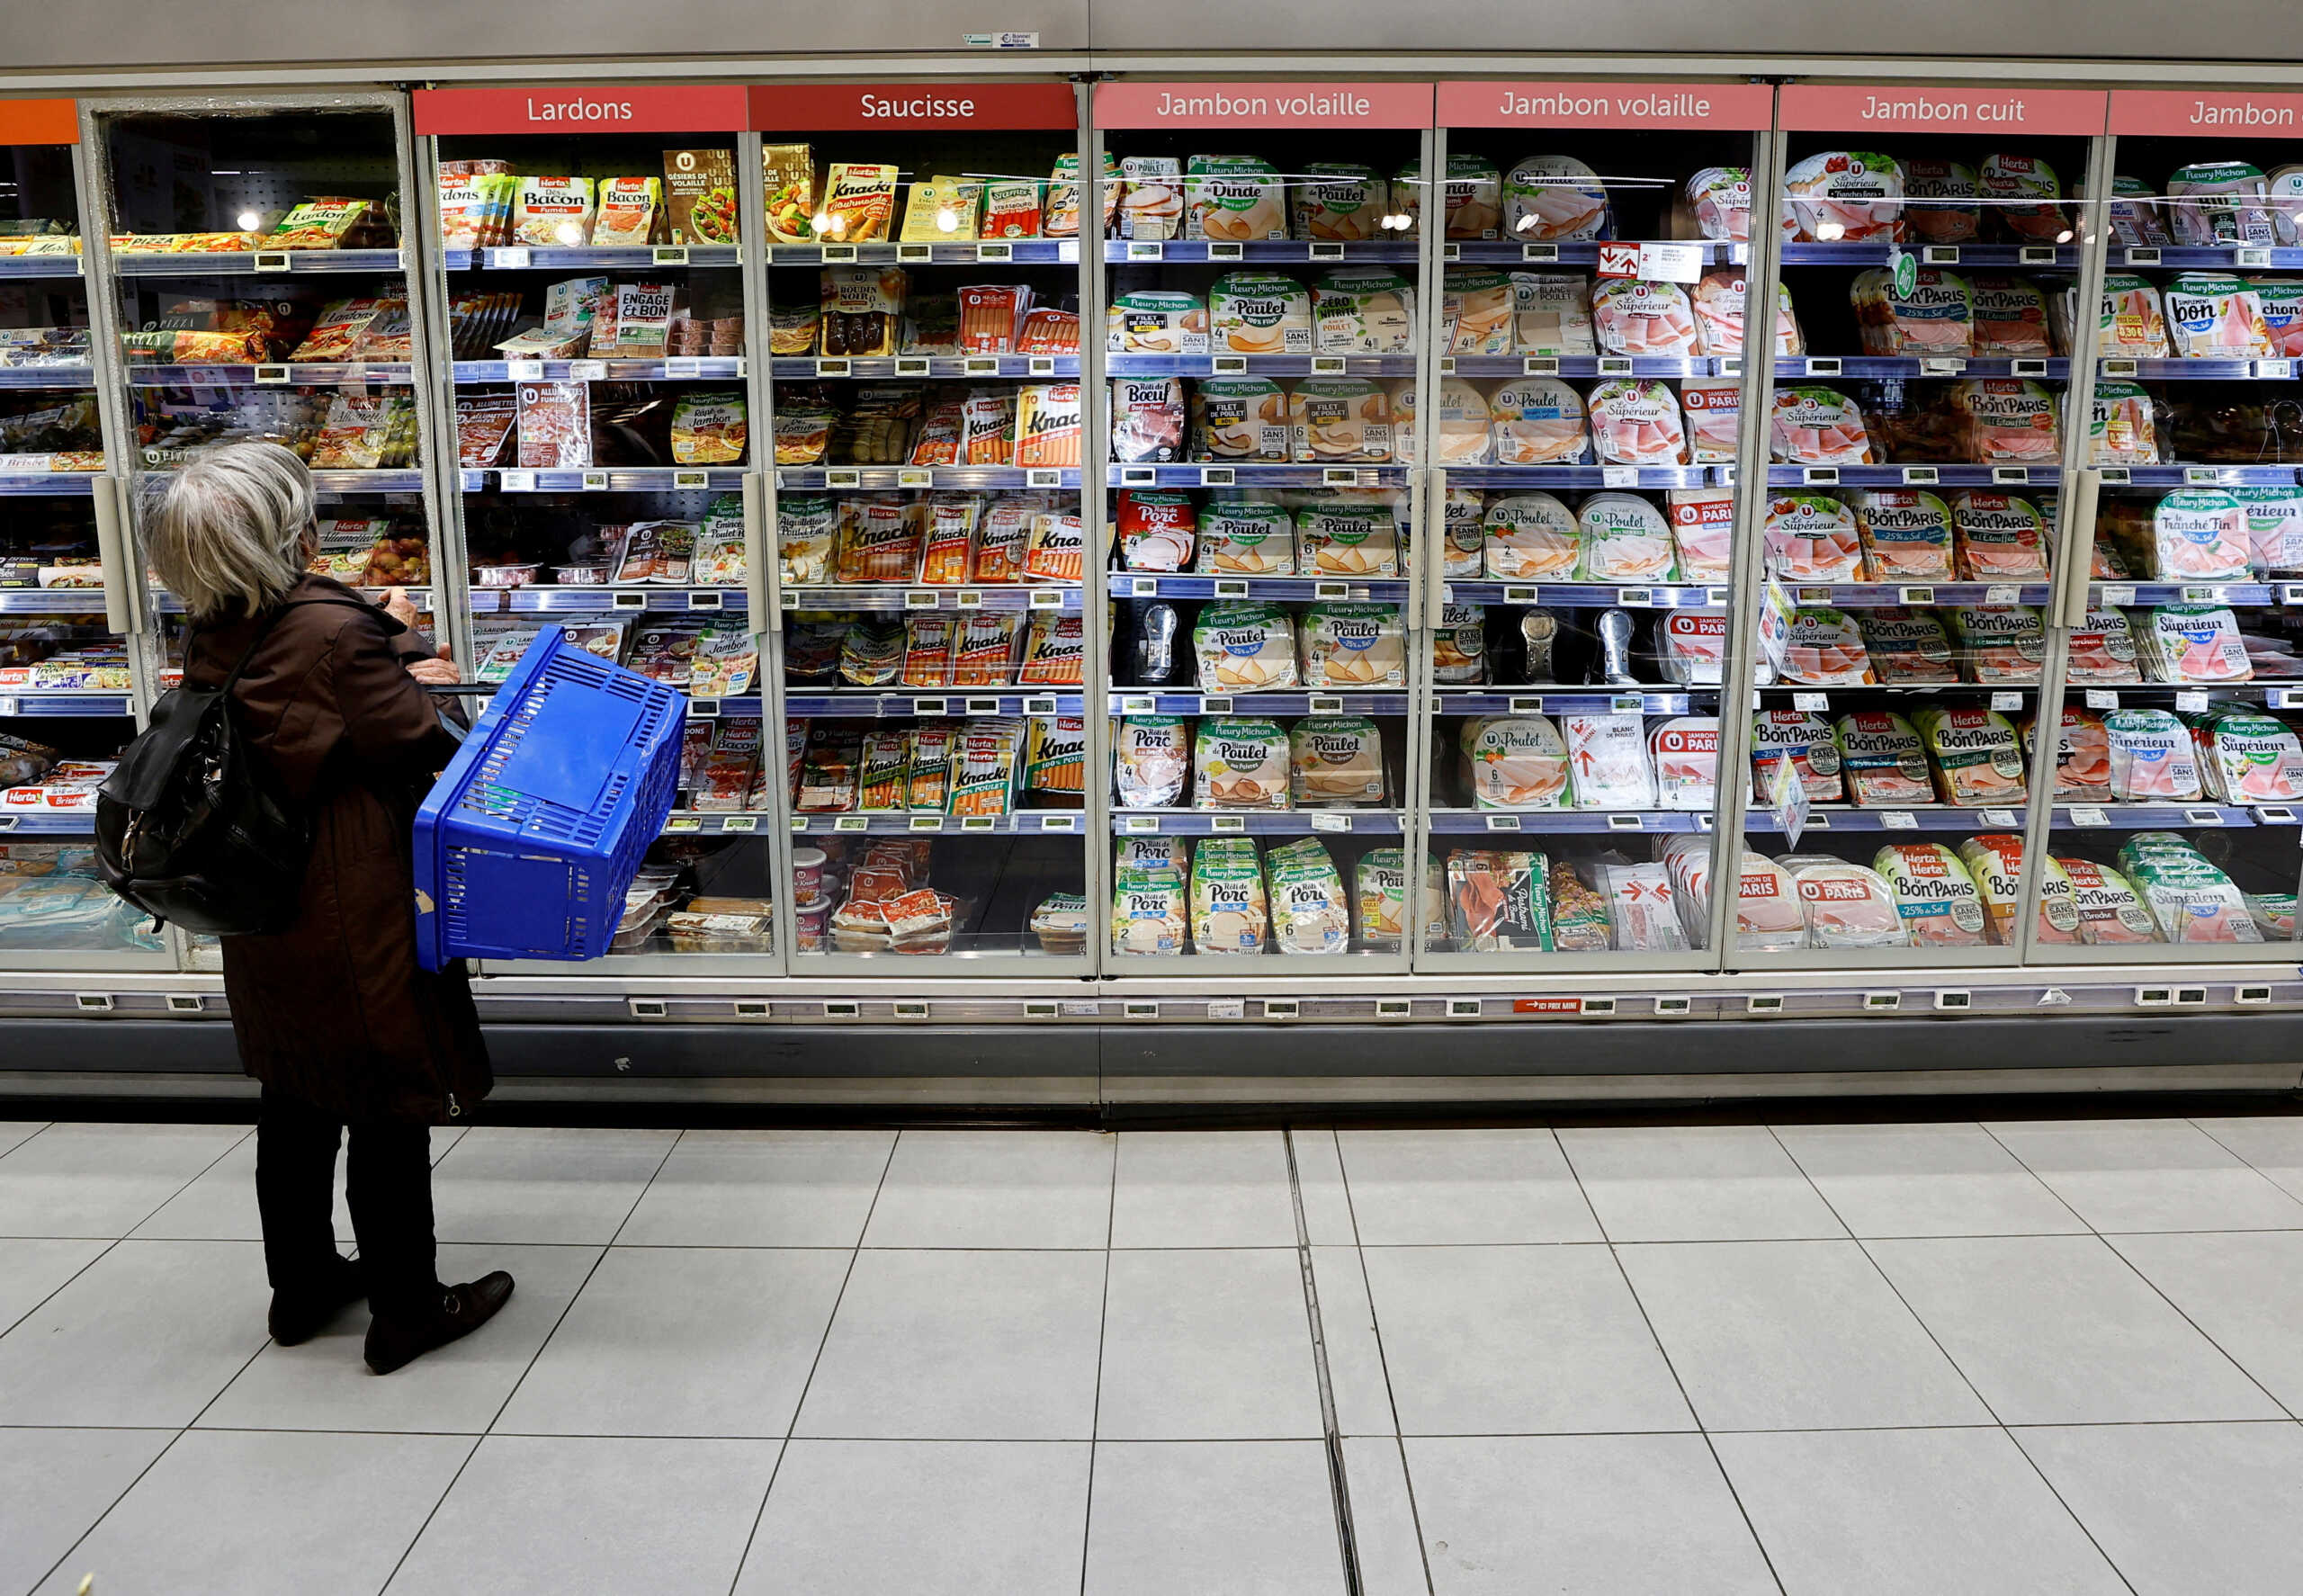 Ισπανία: Παρατείνεται για έξι μήνες η κατάργηση του ΦΠΑ σε βασικά προϊόντα διατροφής